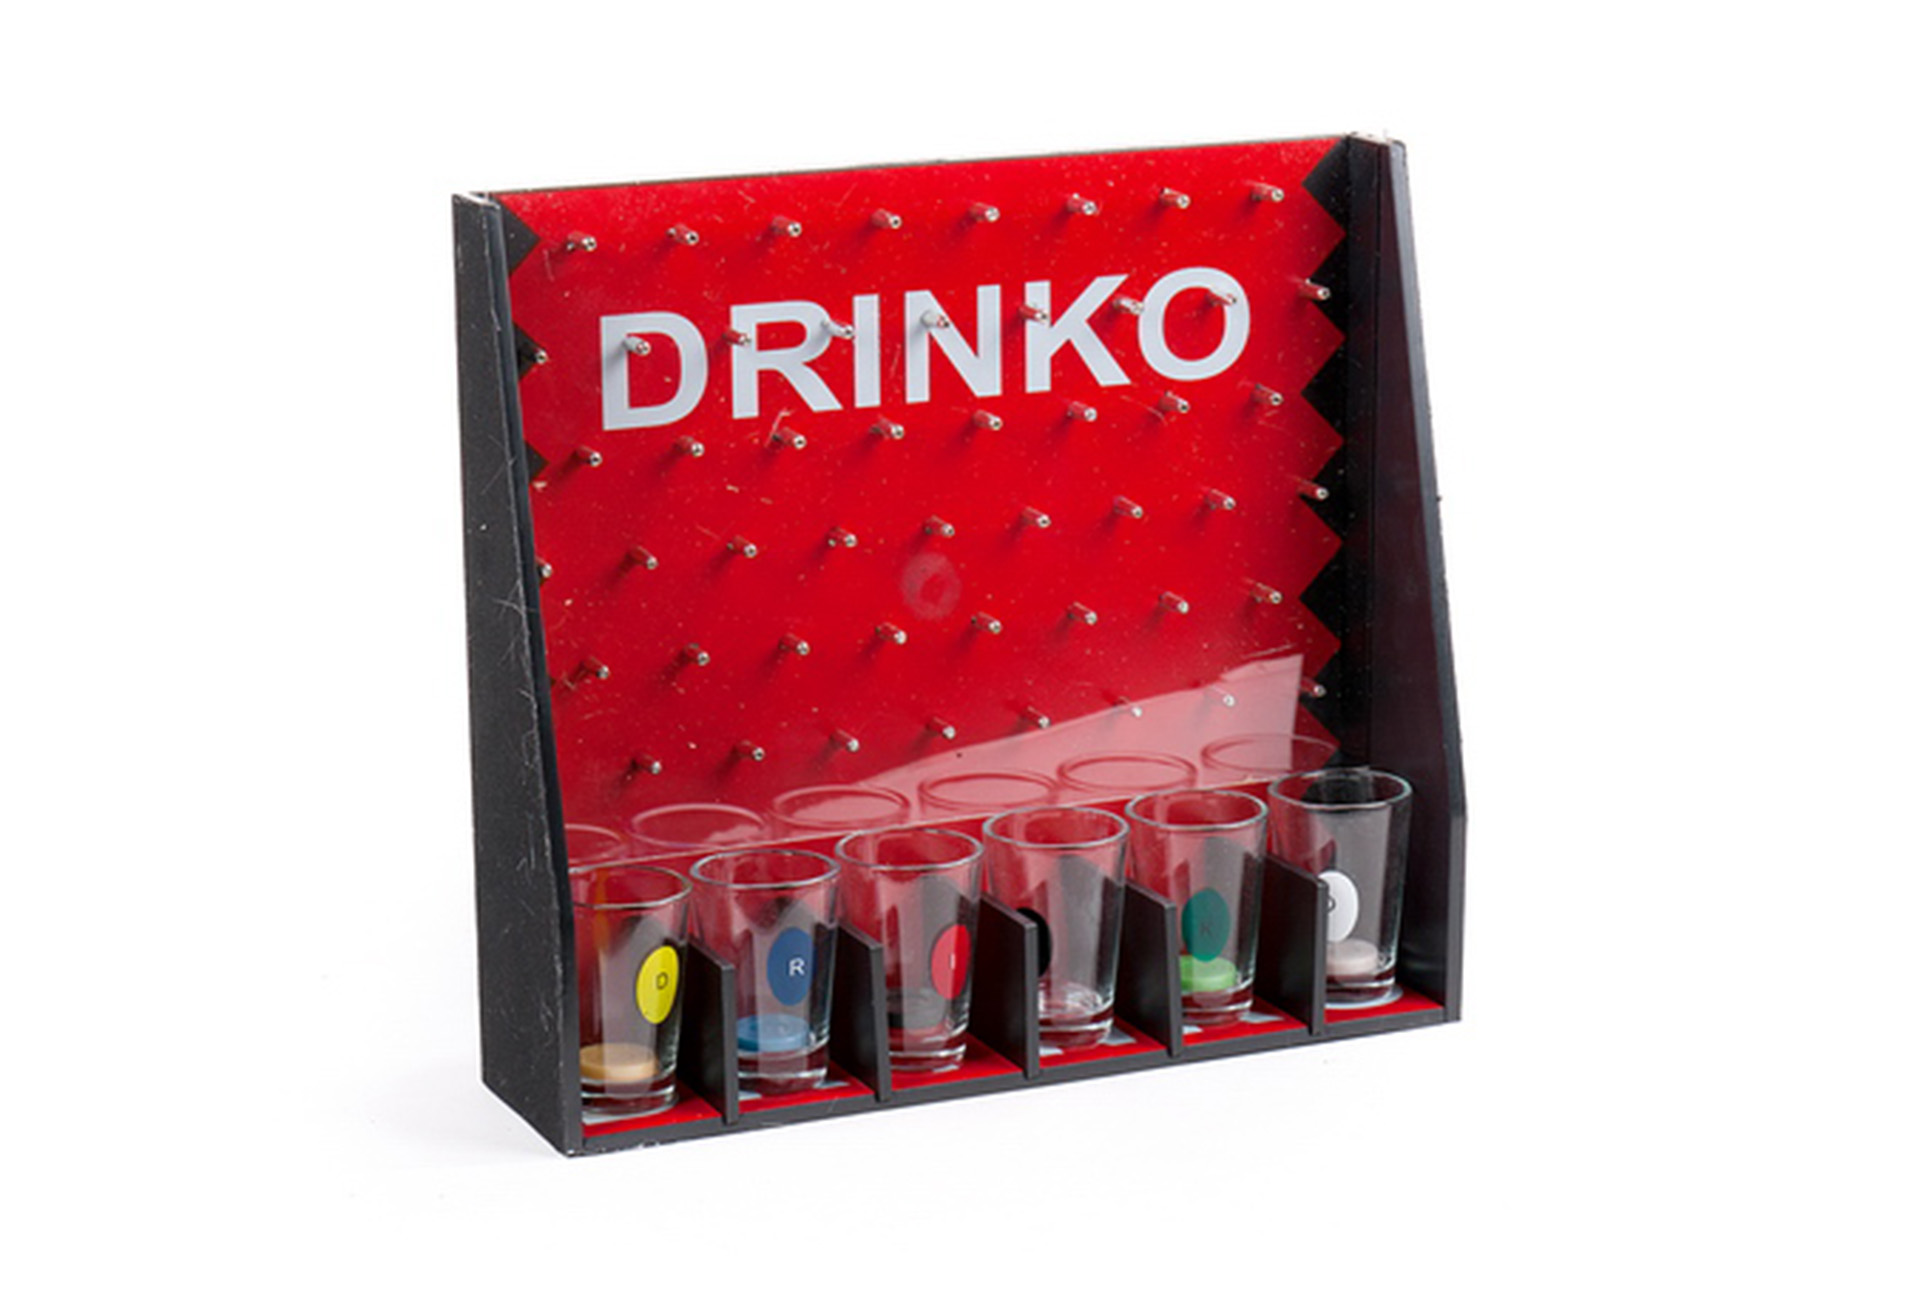 DK1205 DRINKO